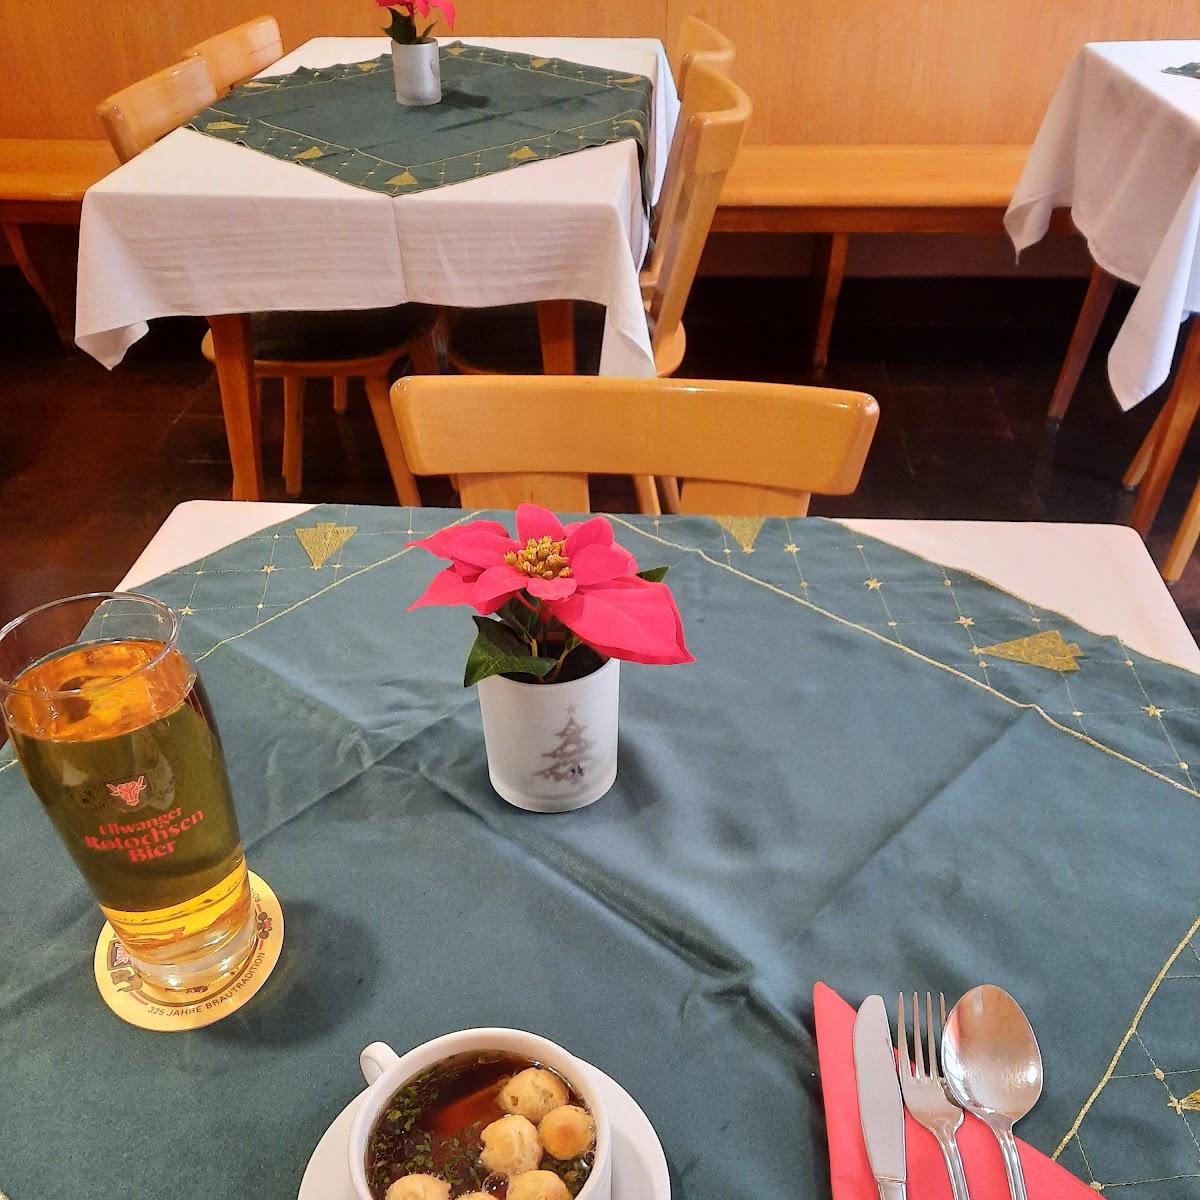 Restaurant "Metzgerei und Gaststätte Goldenes Kreuz" in Ellwangen (Jagst)